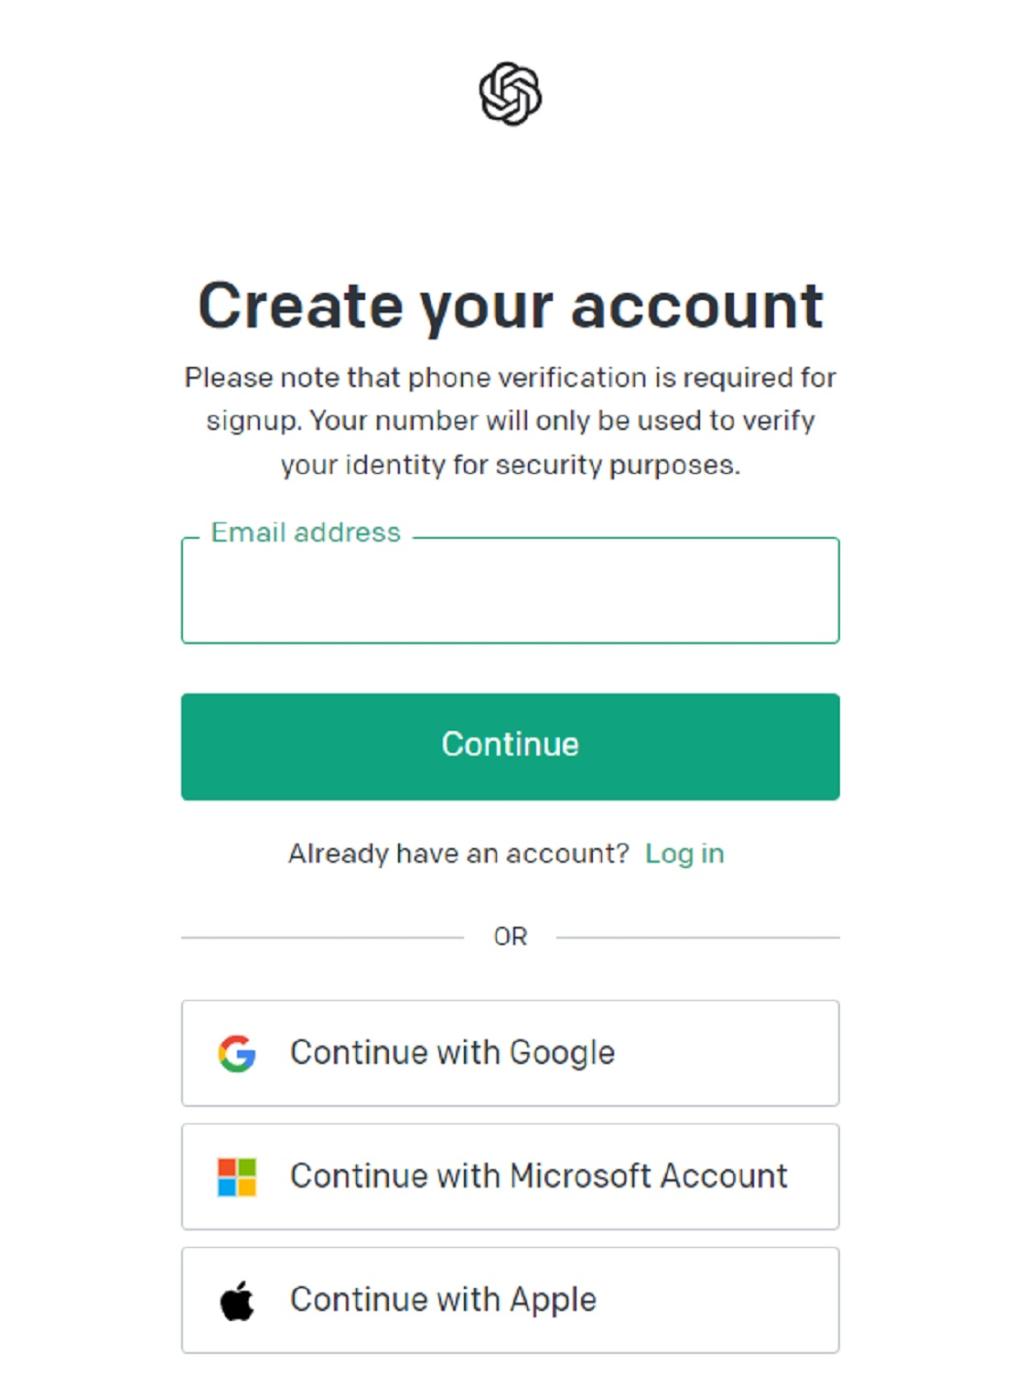 استفاده از روش صحیح احراز هویت در هنگام ورود به سیستم